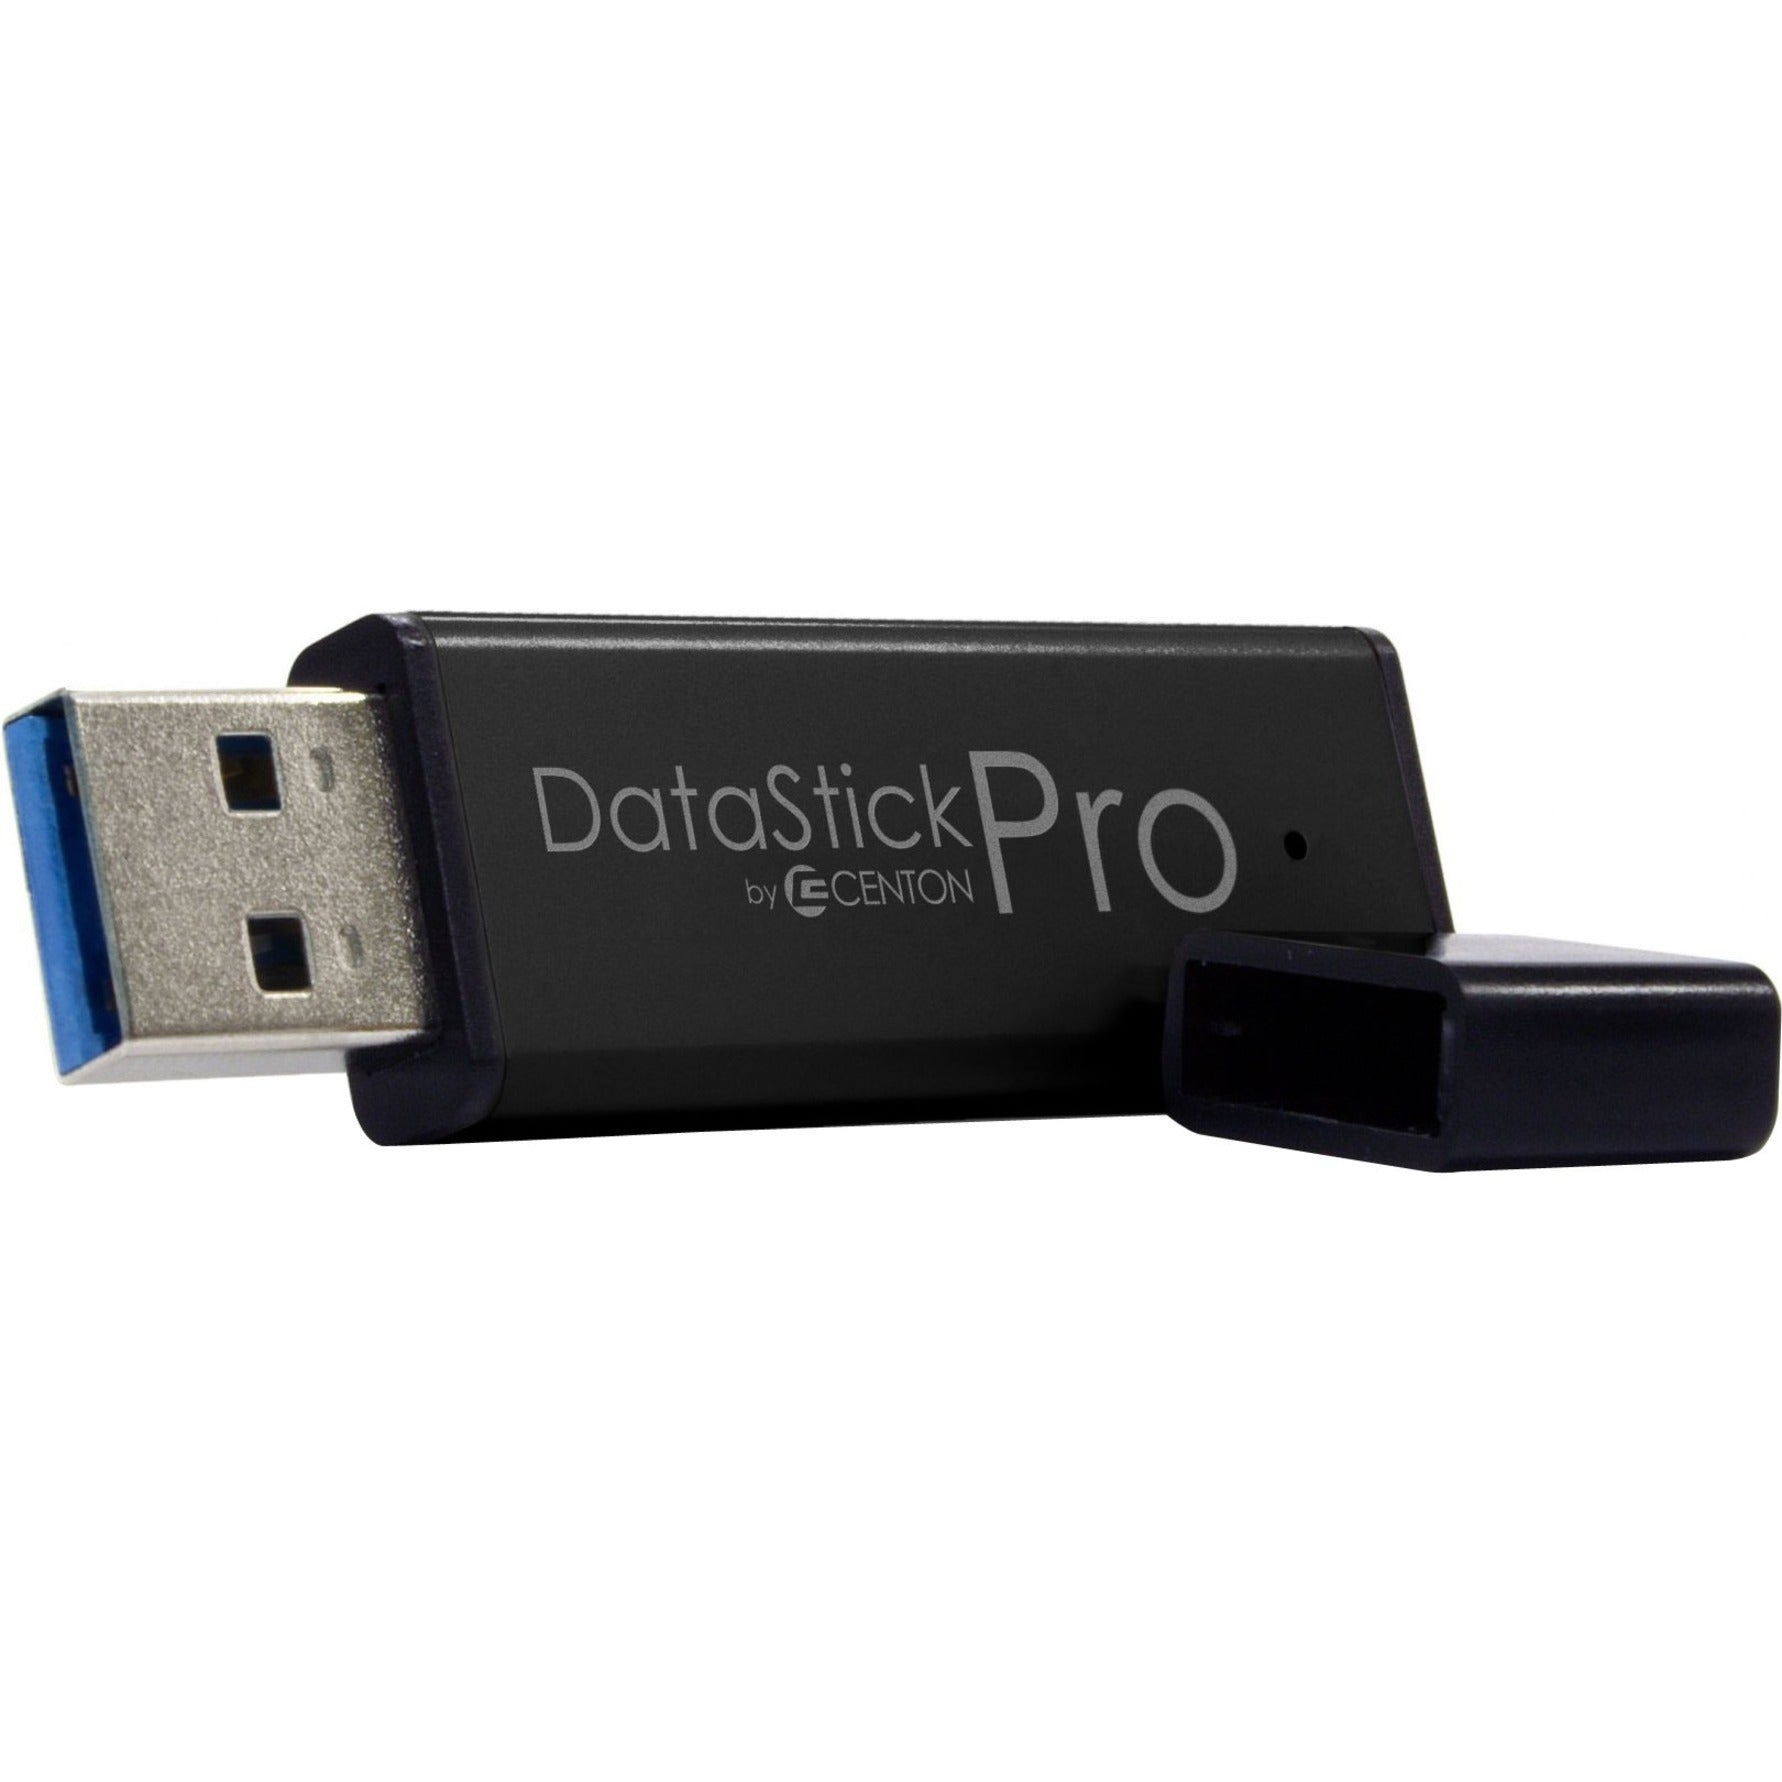 Centon S1-U3P6-256G MP Essential USB 3.0 Datastick Pro (Black) 256GB High-Speed Storage Solution  Centon S1-U3P6-256G MP Essential USB 3.0 Datastick Pro (Nero) 256GB Soluzione di archiviazione ad alta velocità